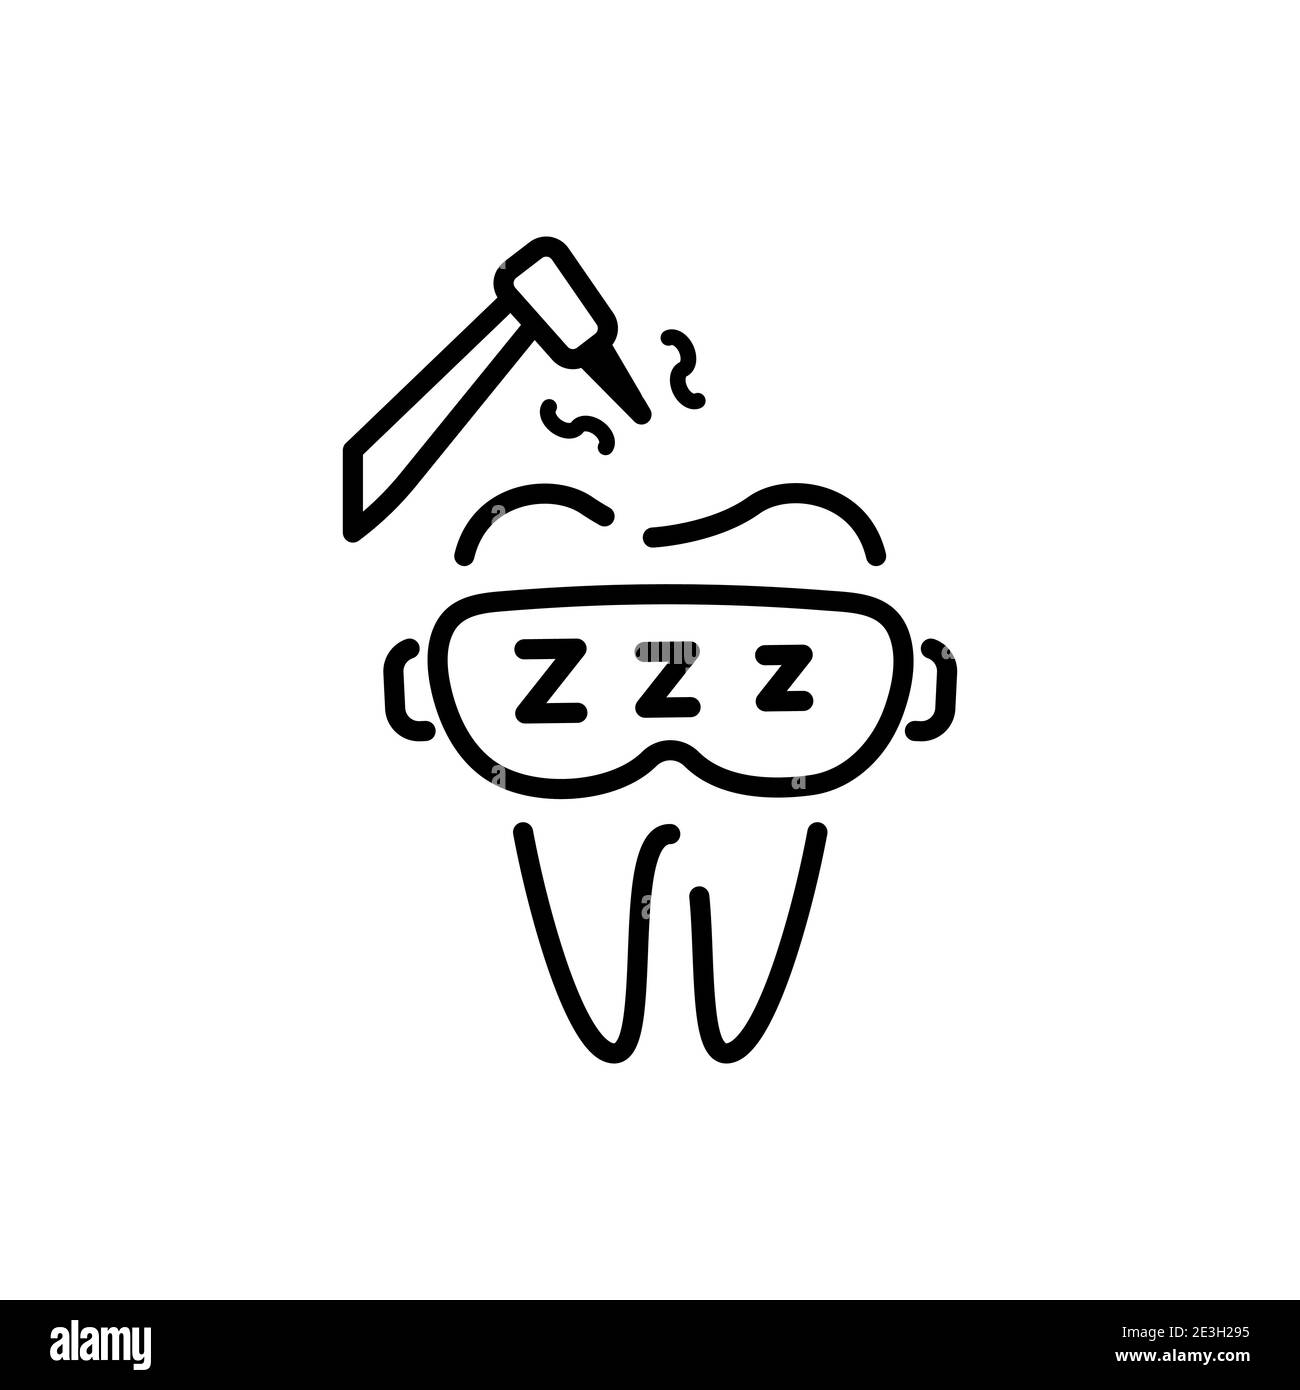 Icona odontoiatria di linea. Elementi vettoriali dentali piatti. Illustrazione Vettoriale